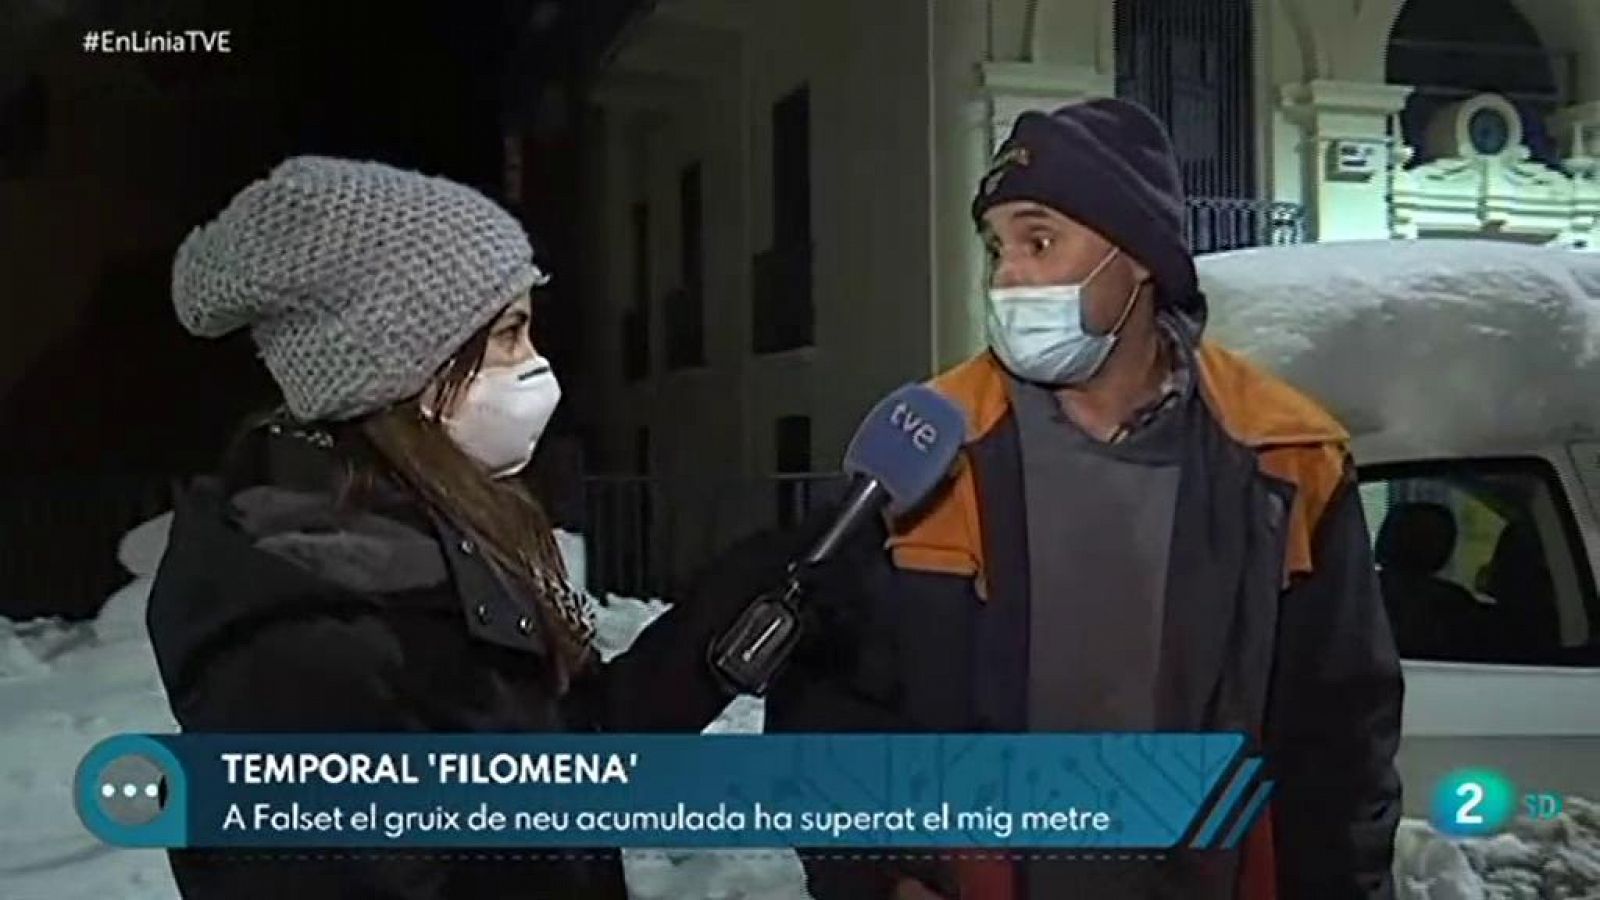 Les conseqüències del temporal Filomena a Catalunya | En Línia - RTVE Catalunya